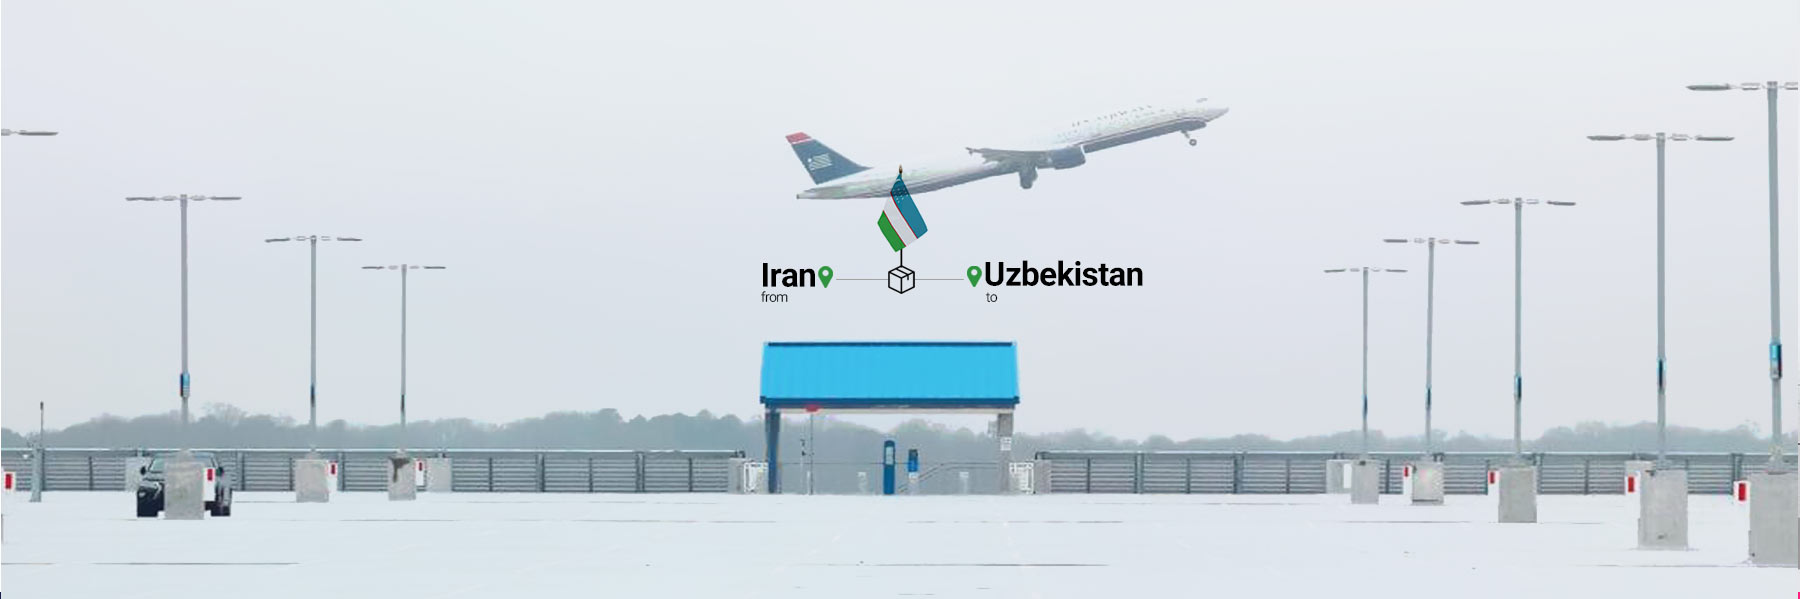 حمل بار به ازبکستان